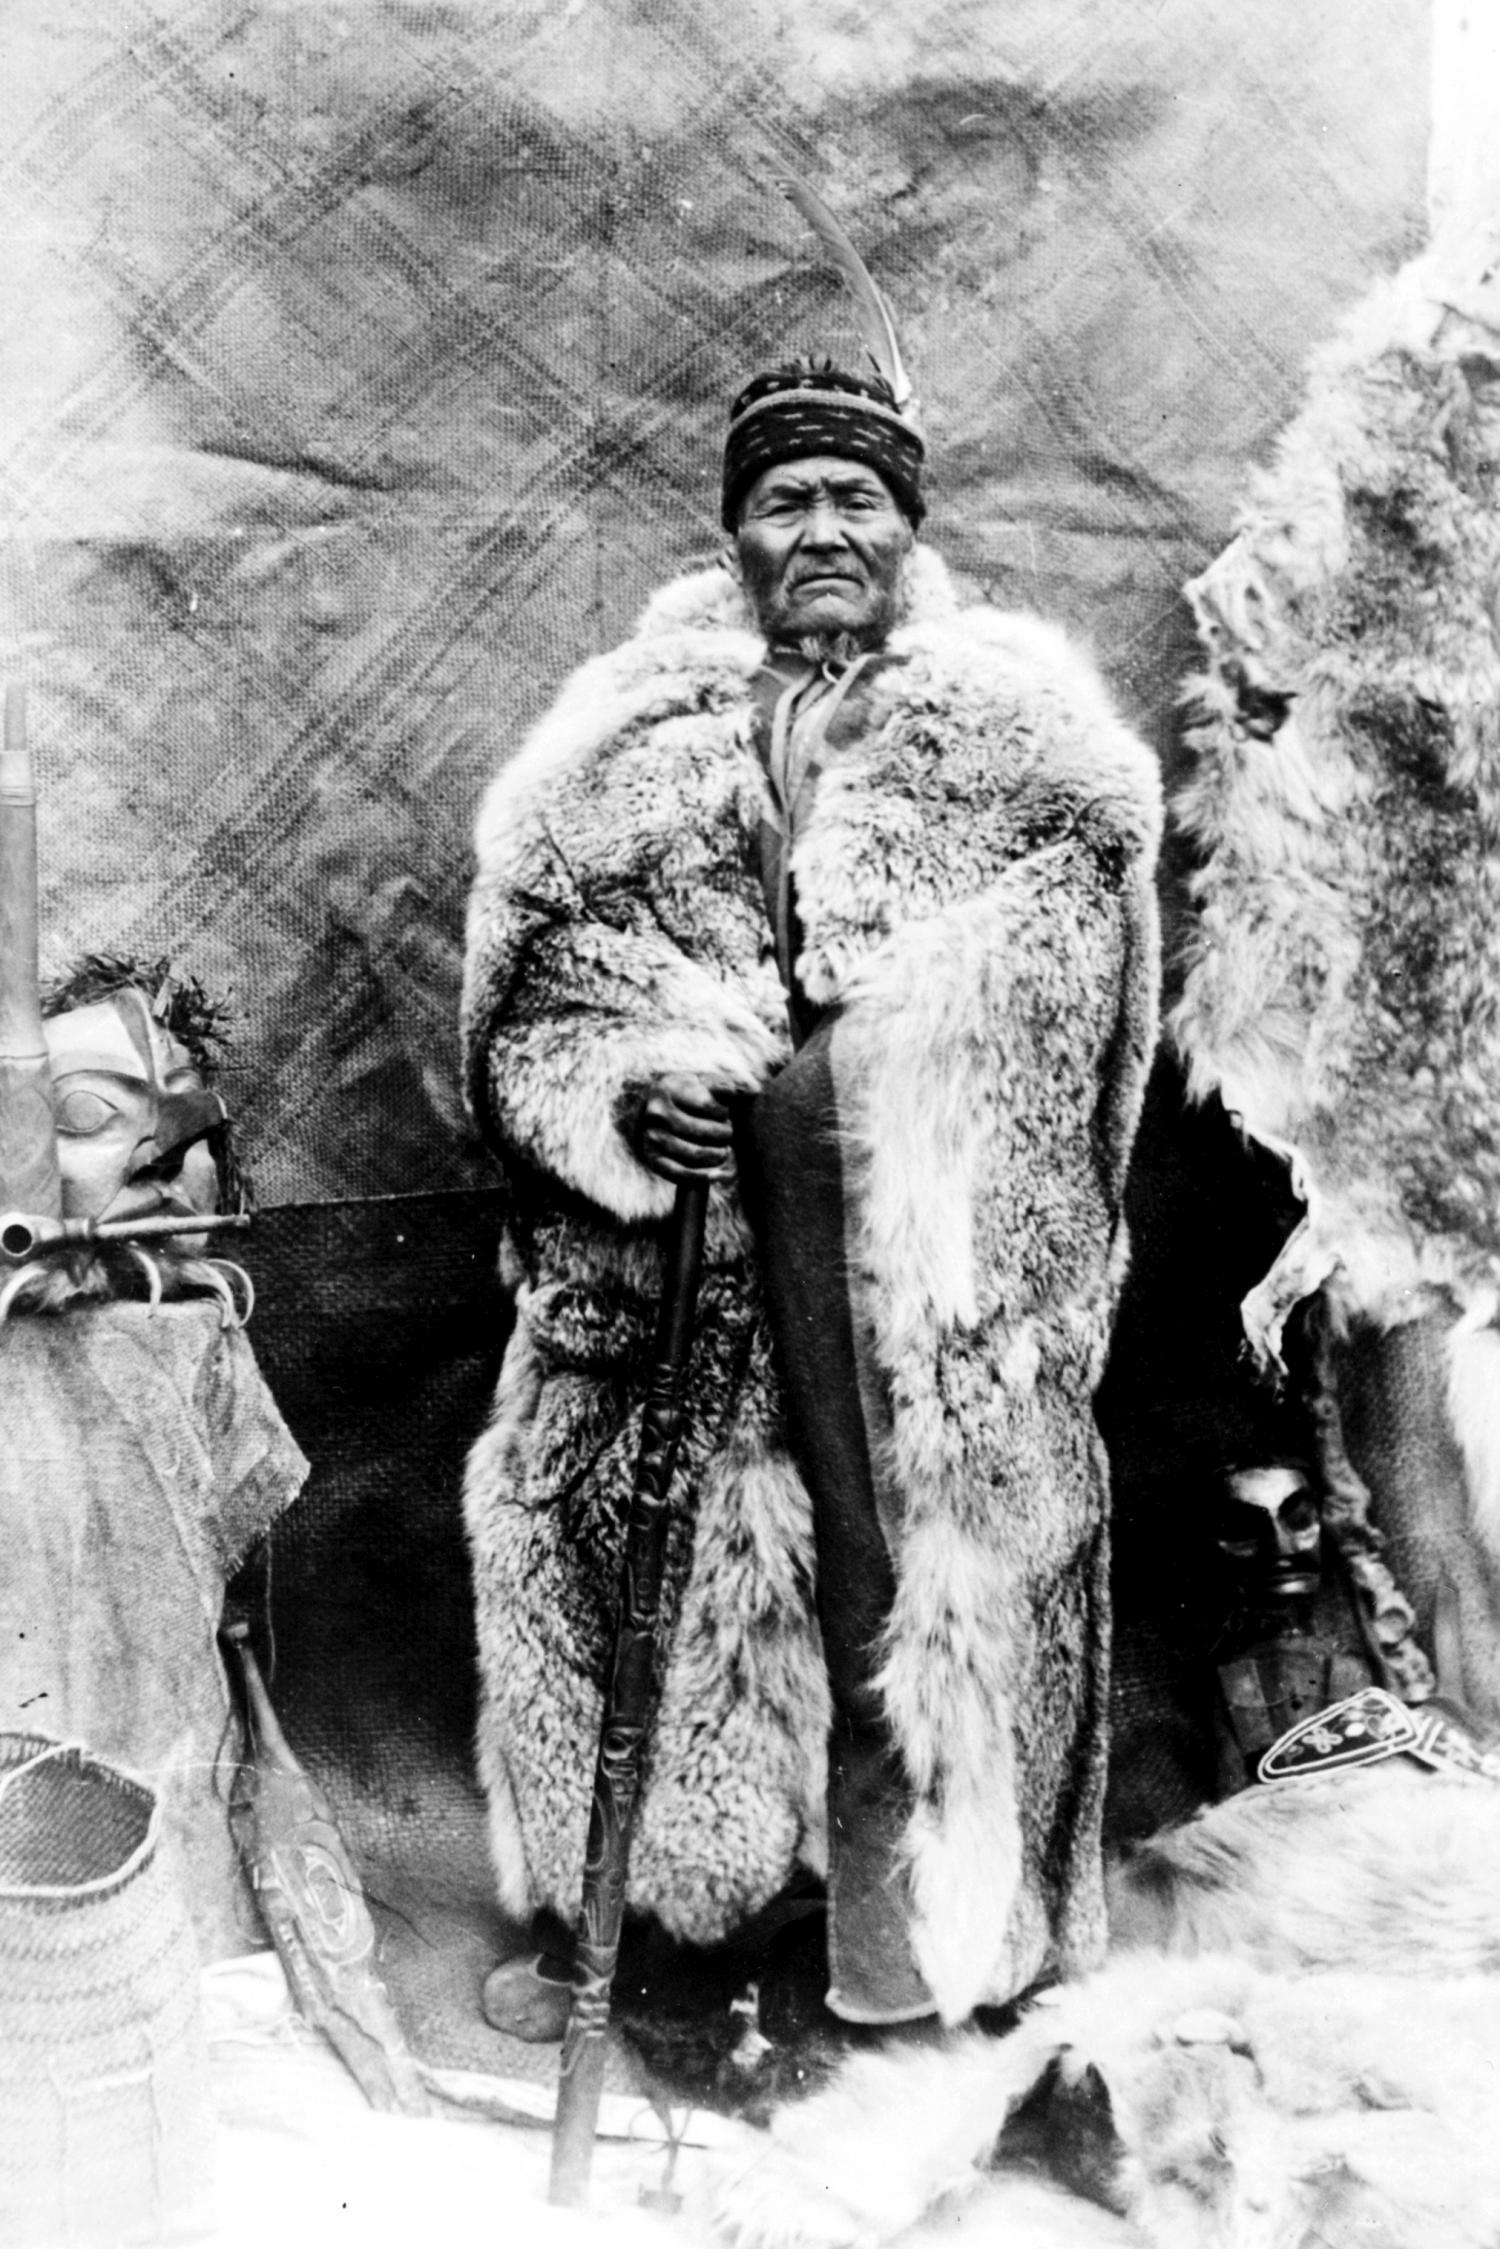 Portrait of Mountain Chief circa 1912.